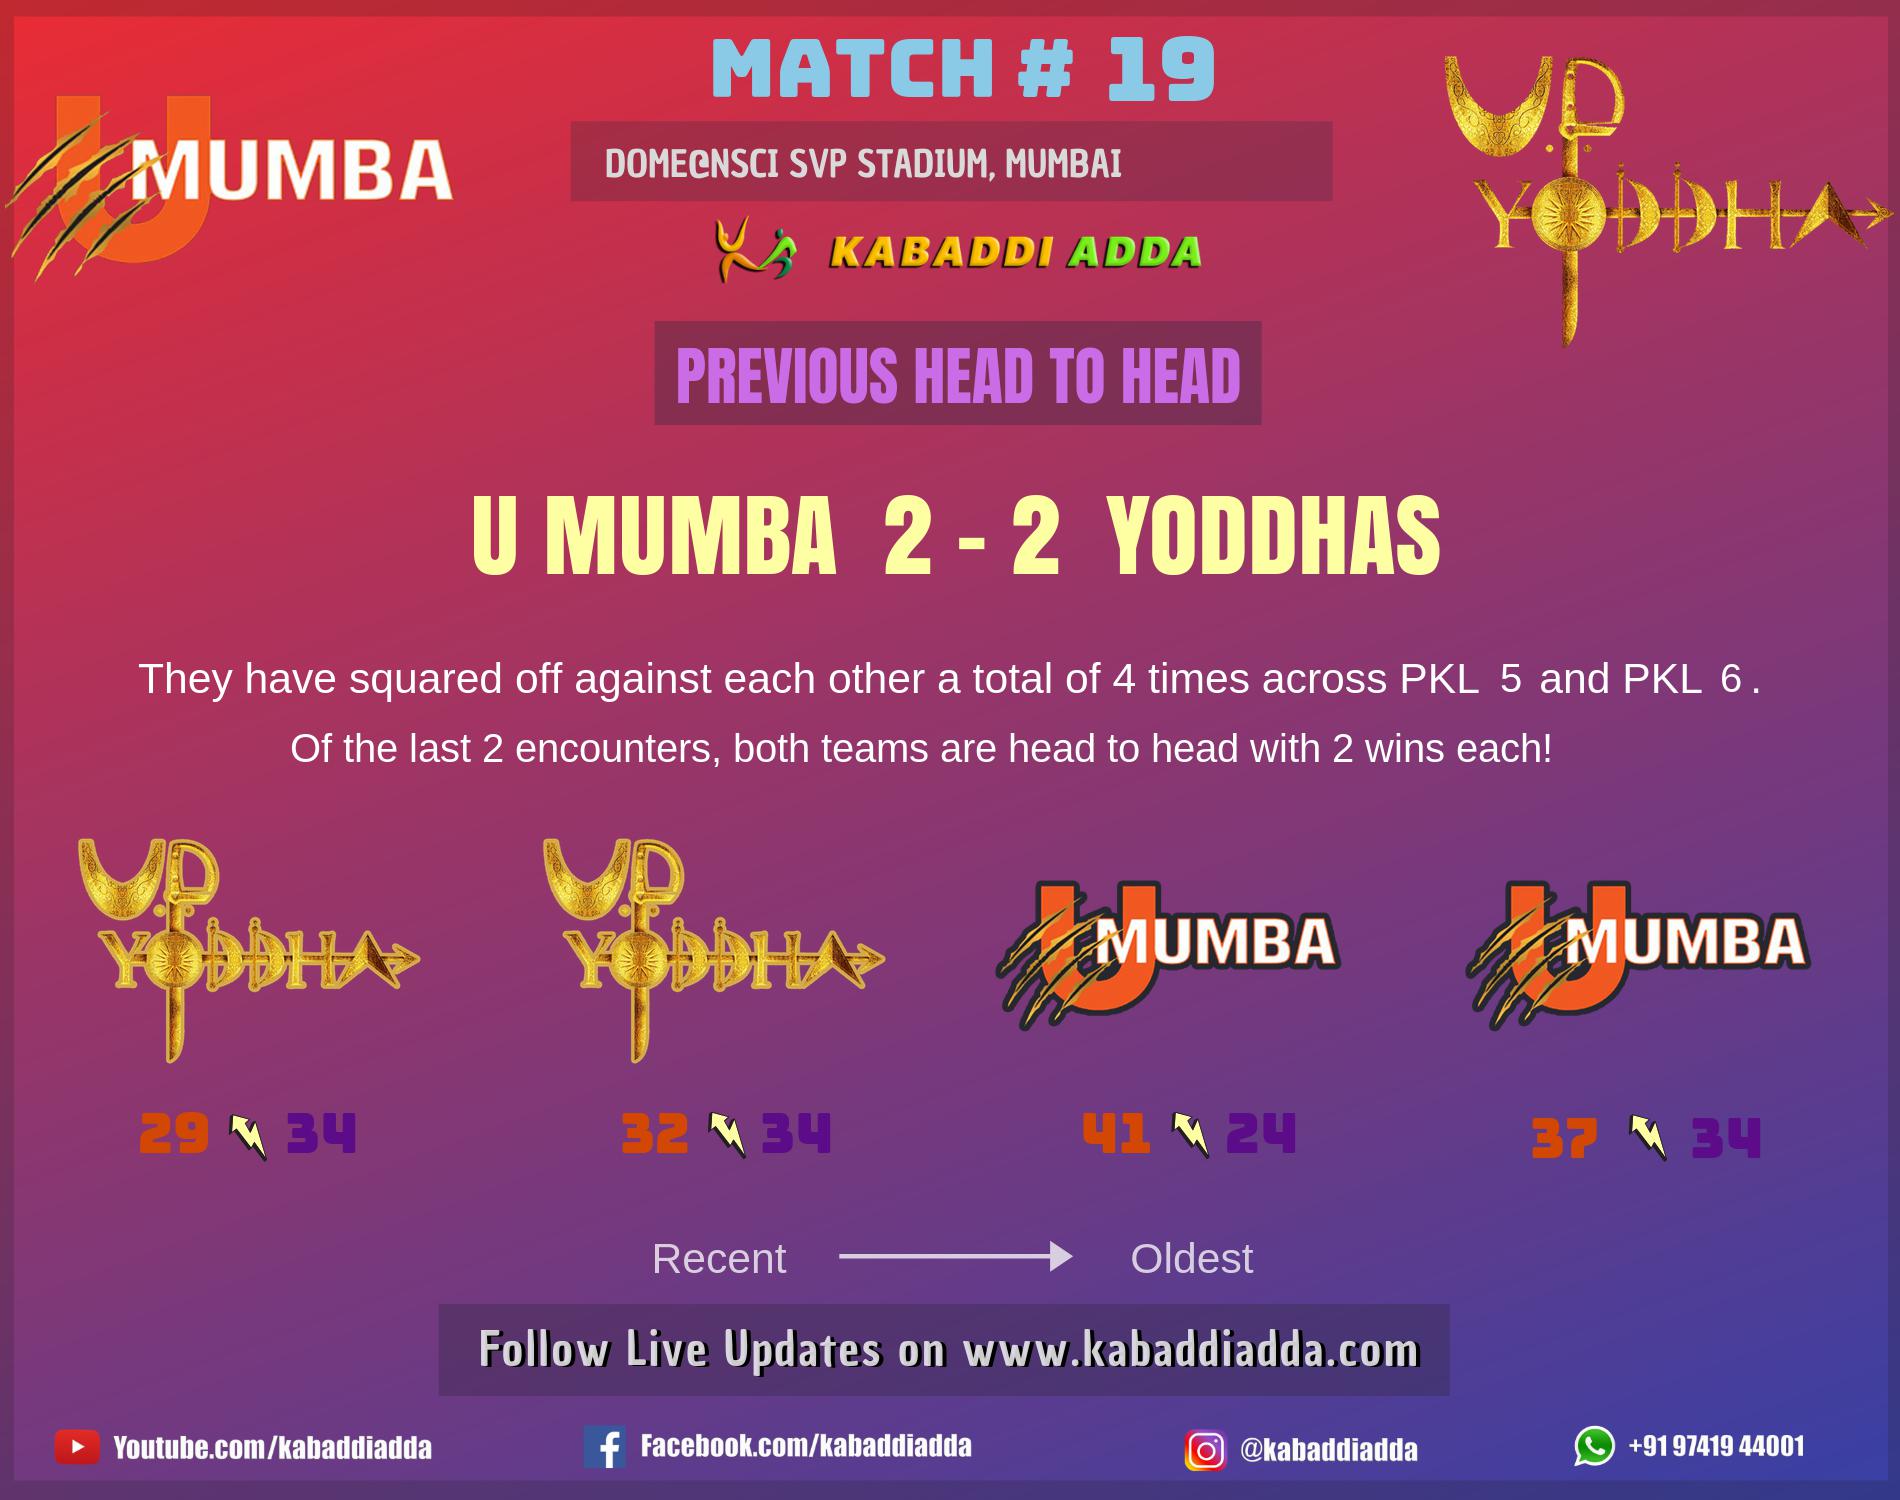 UMumba UP Yoddha Pro Kabaddi season 7